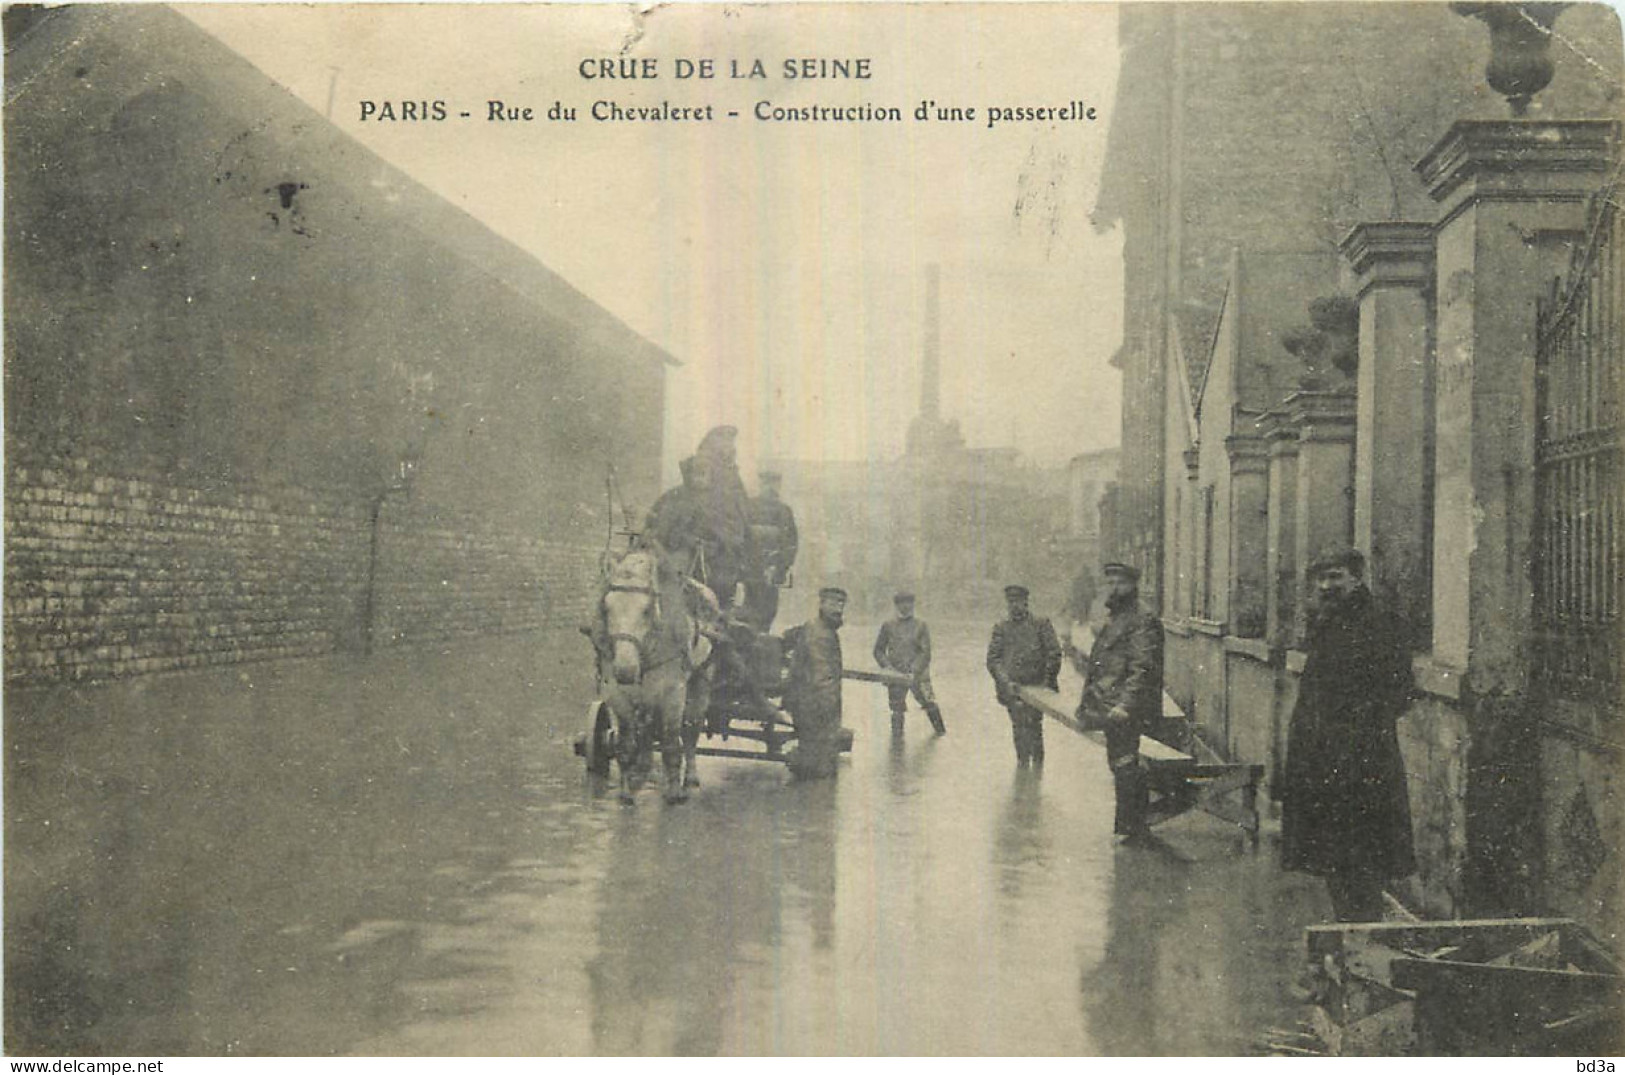 75 - PARIS - CRUE DE LA SEINE - RUE CHEVALERET - CONSTRUCTION D'UNE PASSERELLE - Paris Flood, 1910